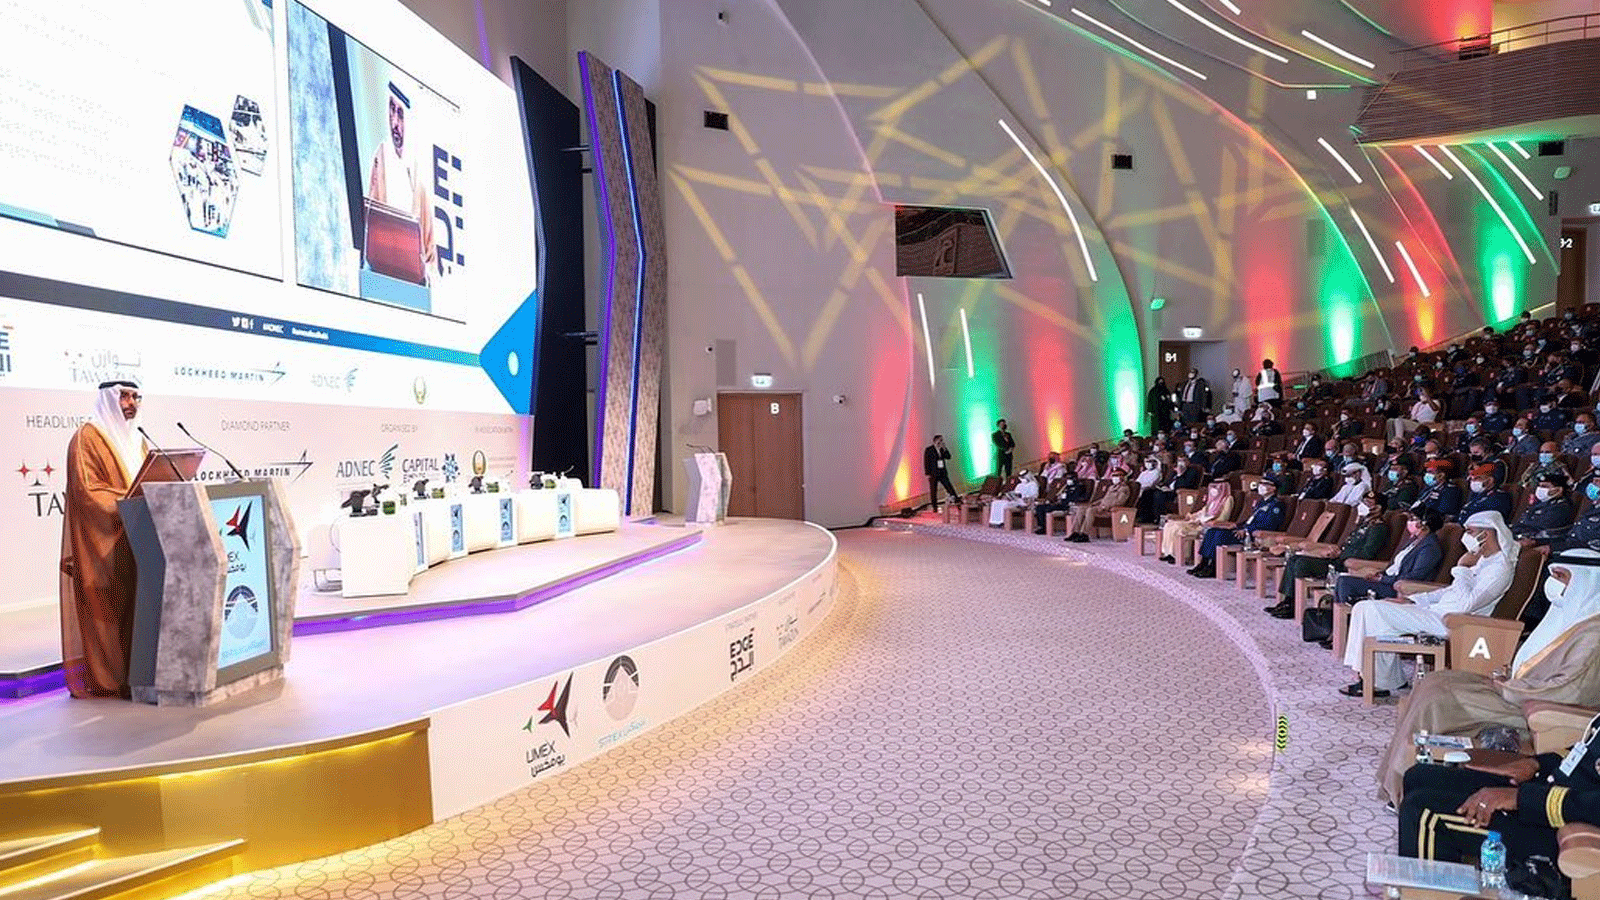 محمد بن أحمد البواردي، عضو مجلس الوزراء وزير الدولة لشؤون الدفاع يلقي الكلمة الافتتاحية للمؤتمر المصاحب لمعرضي يومكس و سيمتكس 2022